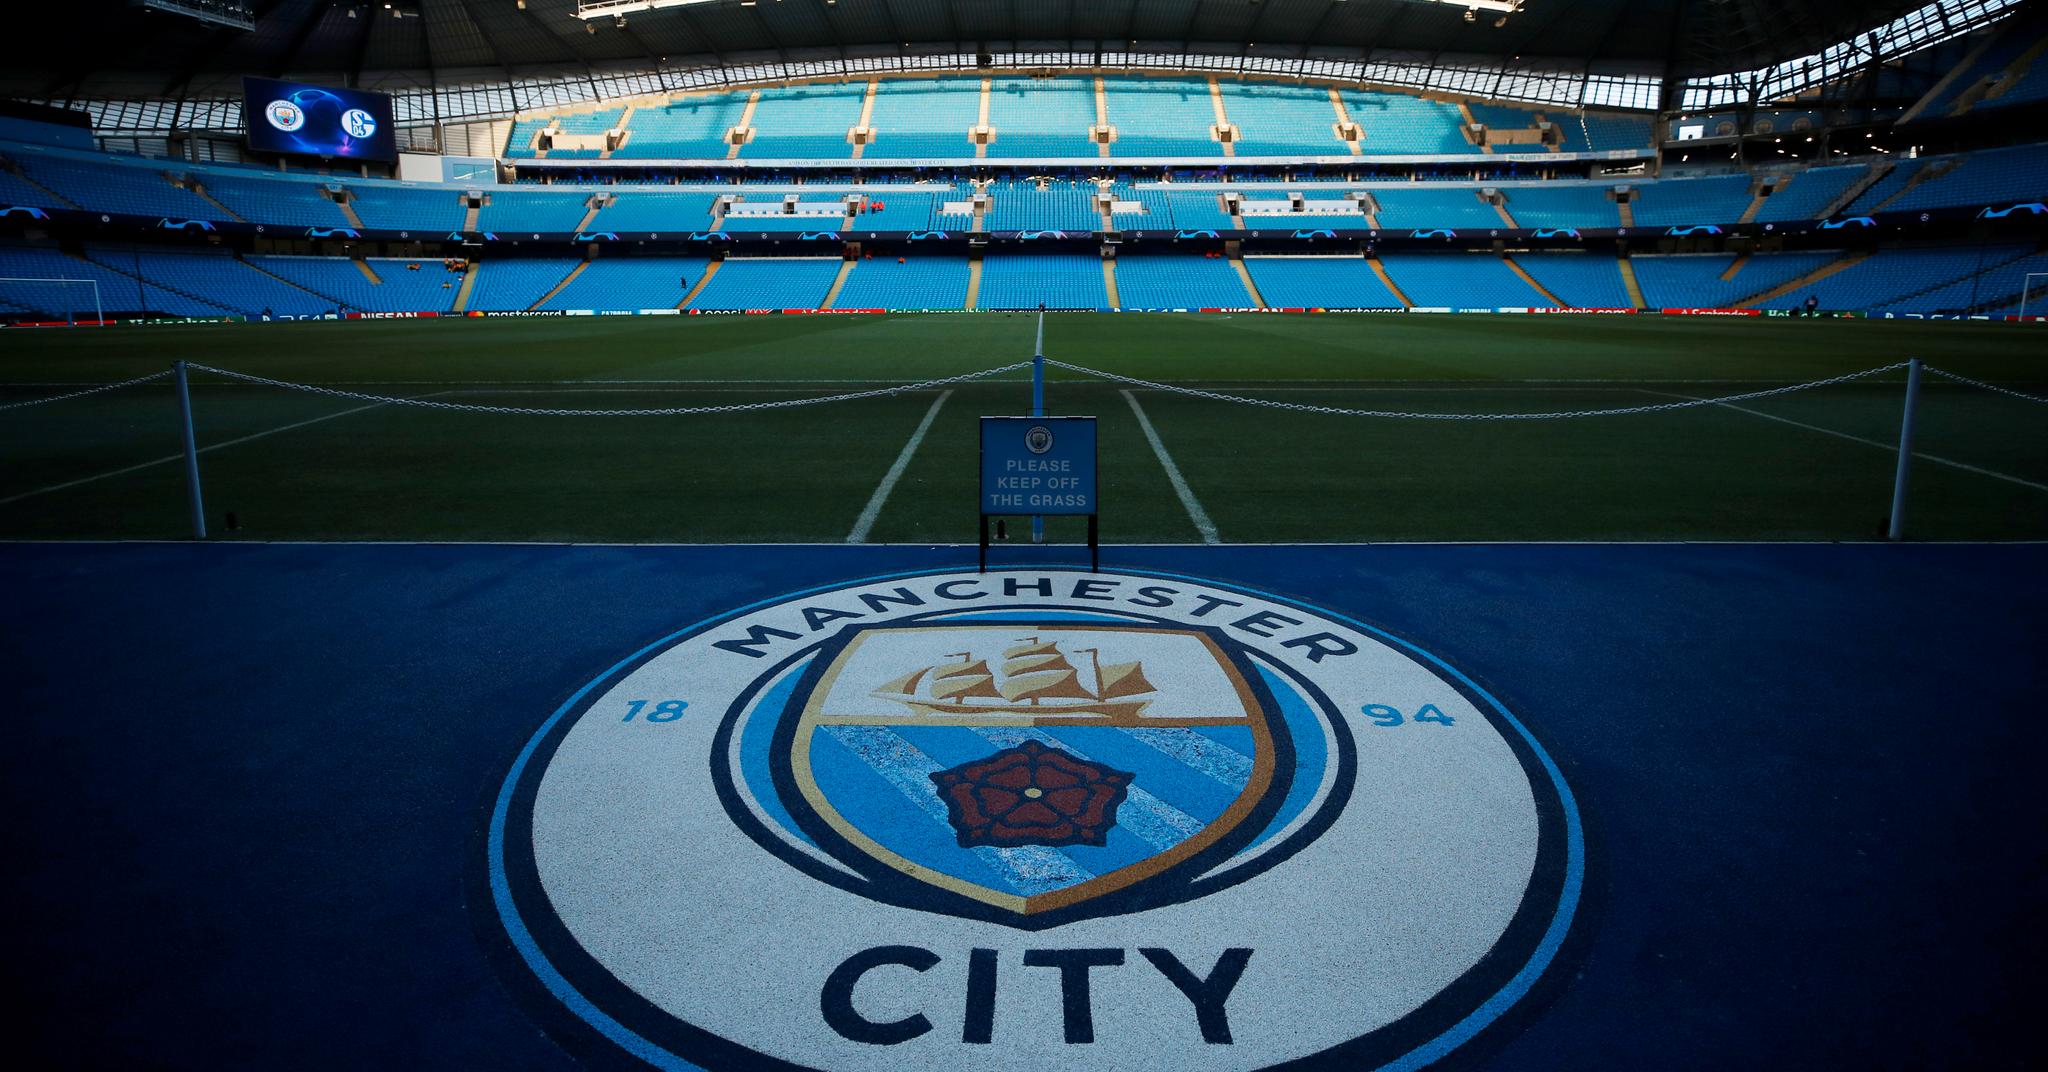  Etihad Stadium er Manchester Citys lekegrind. Klubben har distansert byrival United i det sportslige de siste årene.